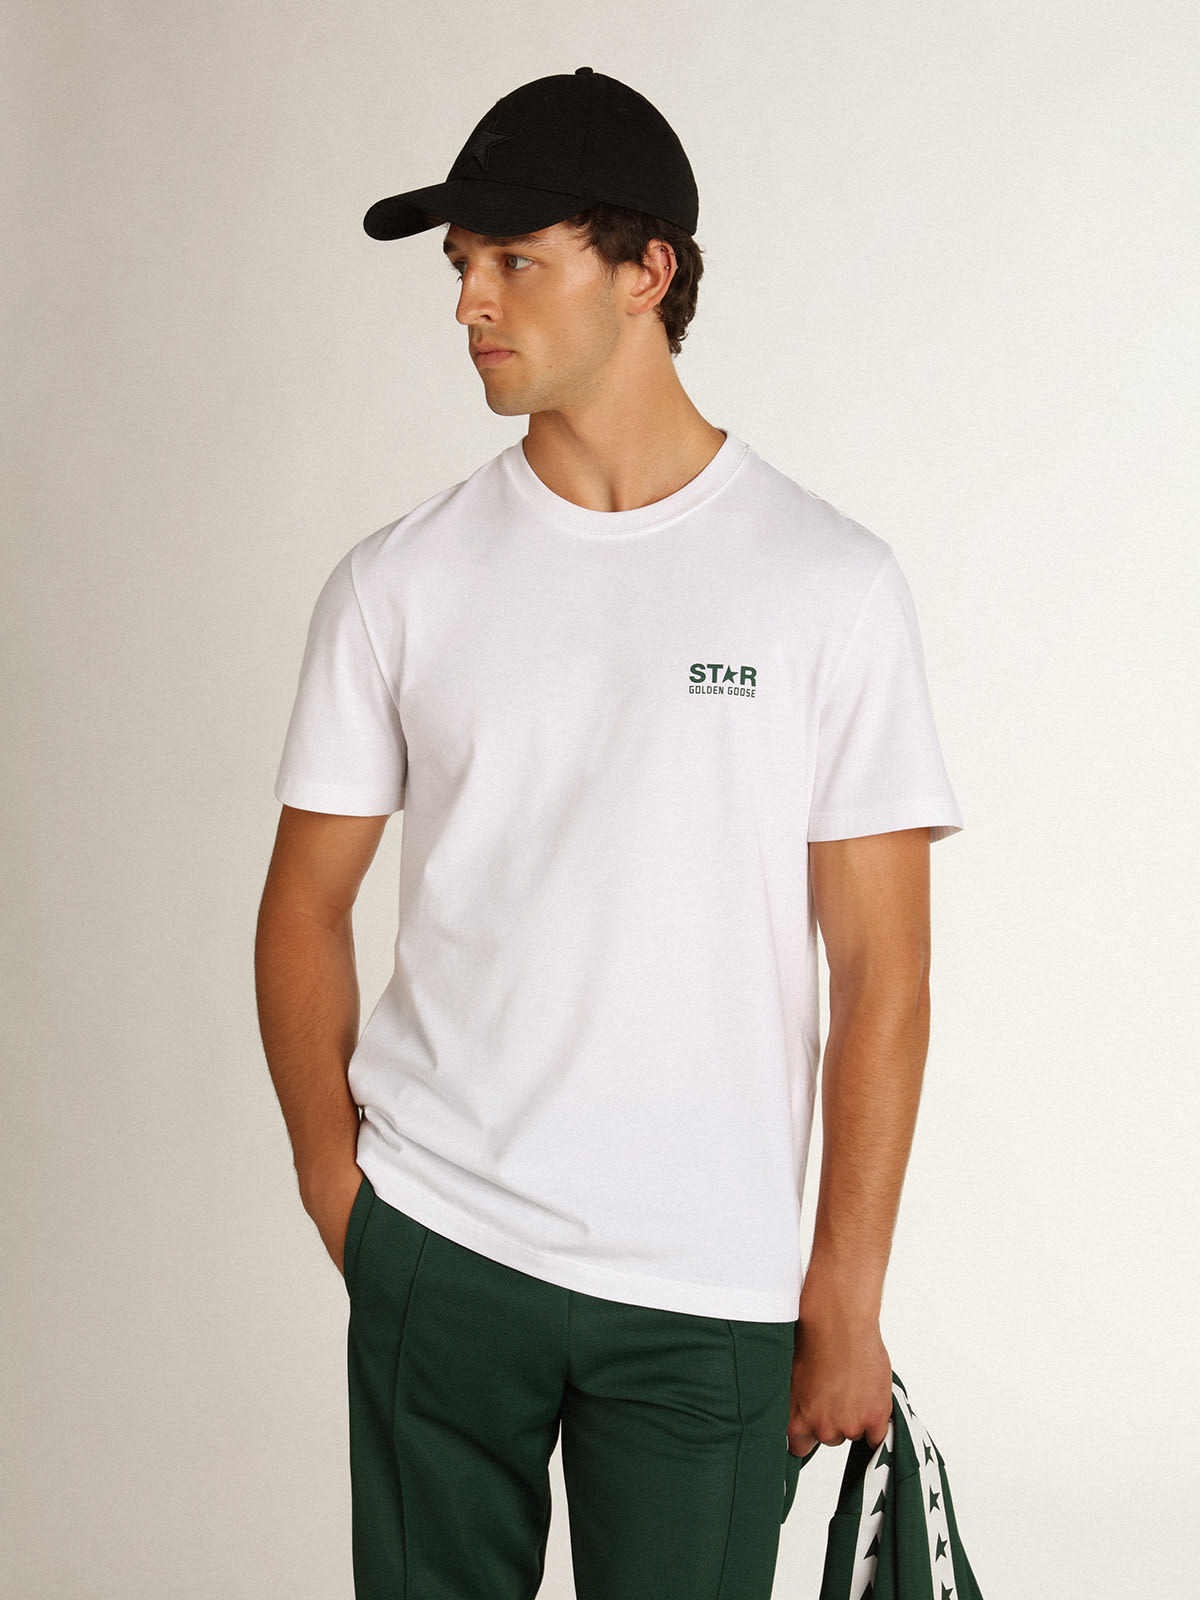 Golden Goose - T-shirt blanc collection Star avec logo et étoile verts contrastés in 